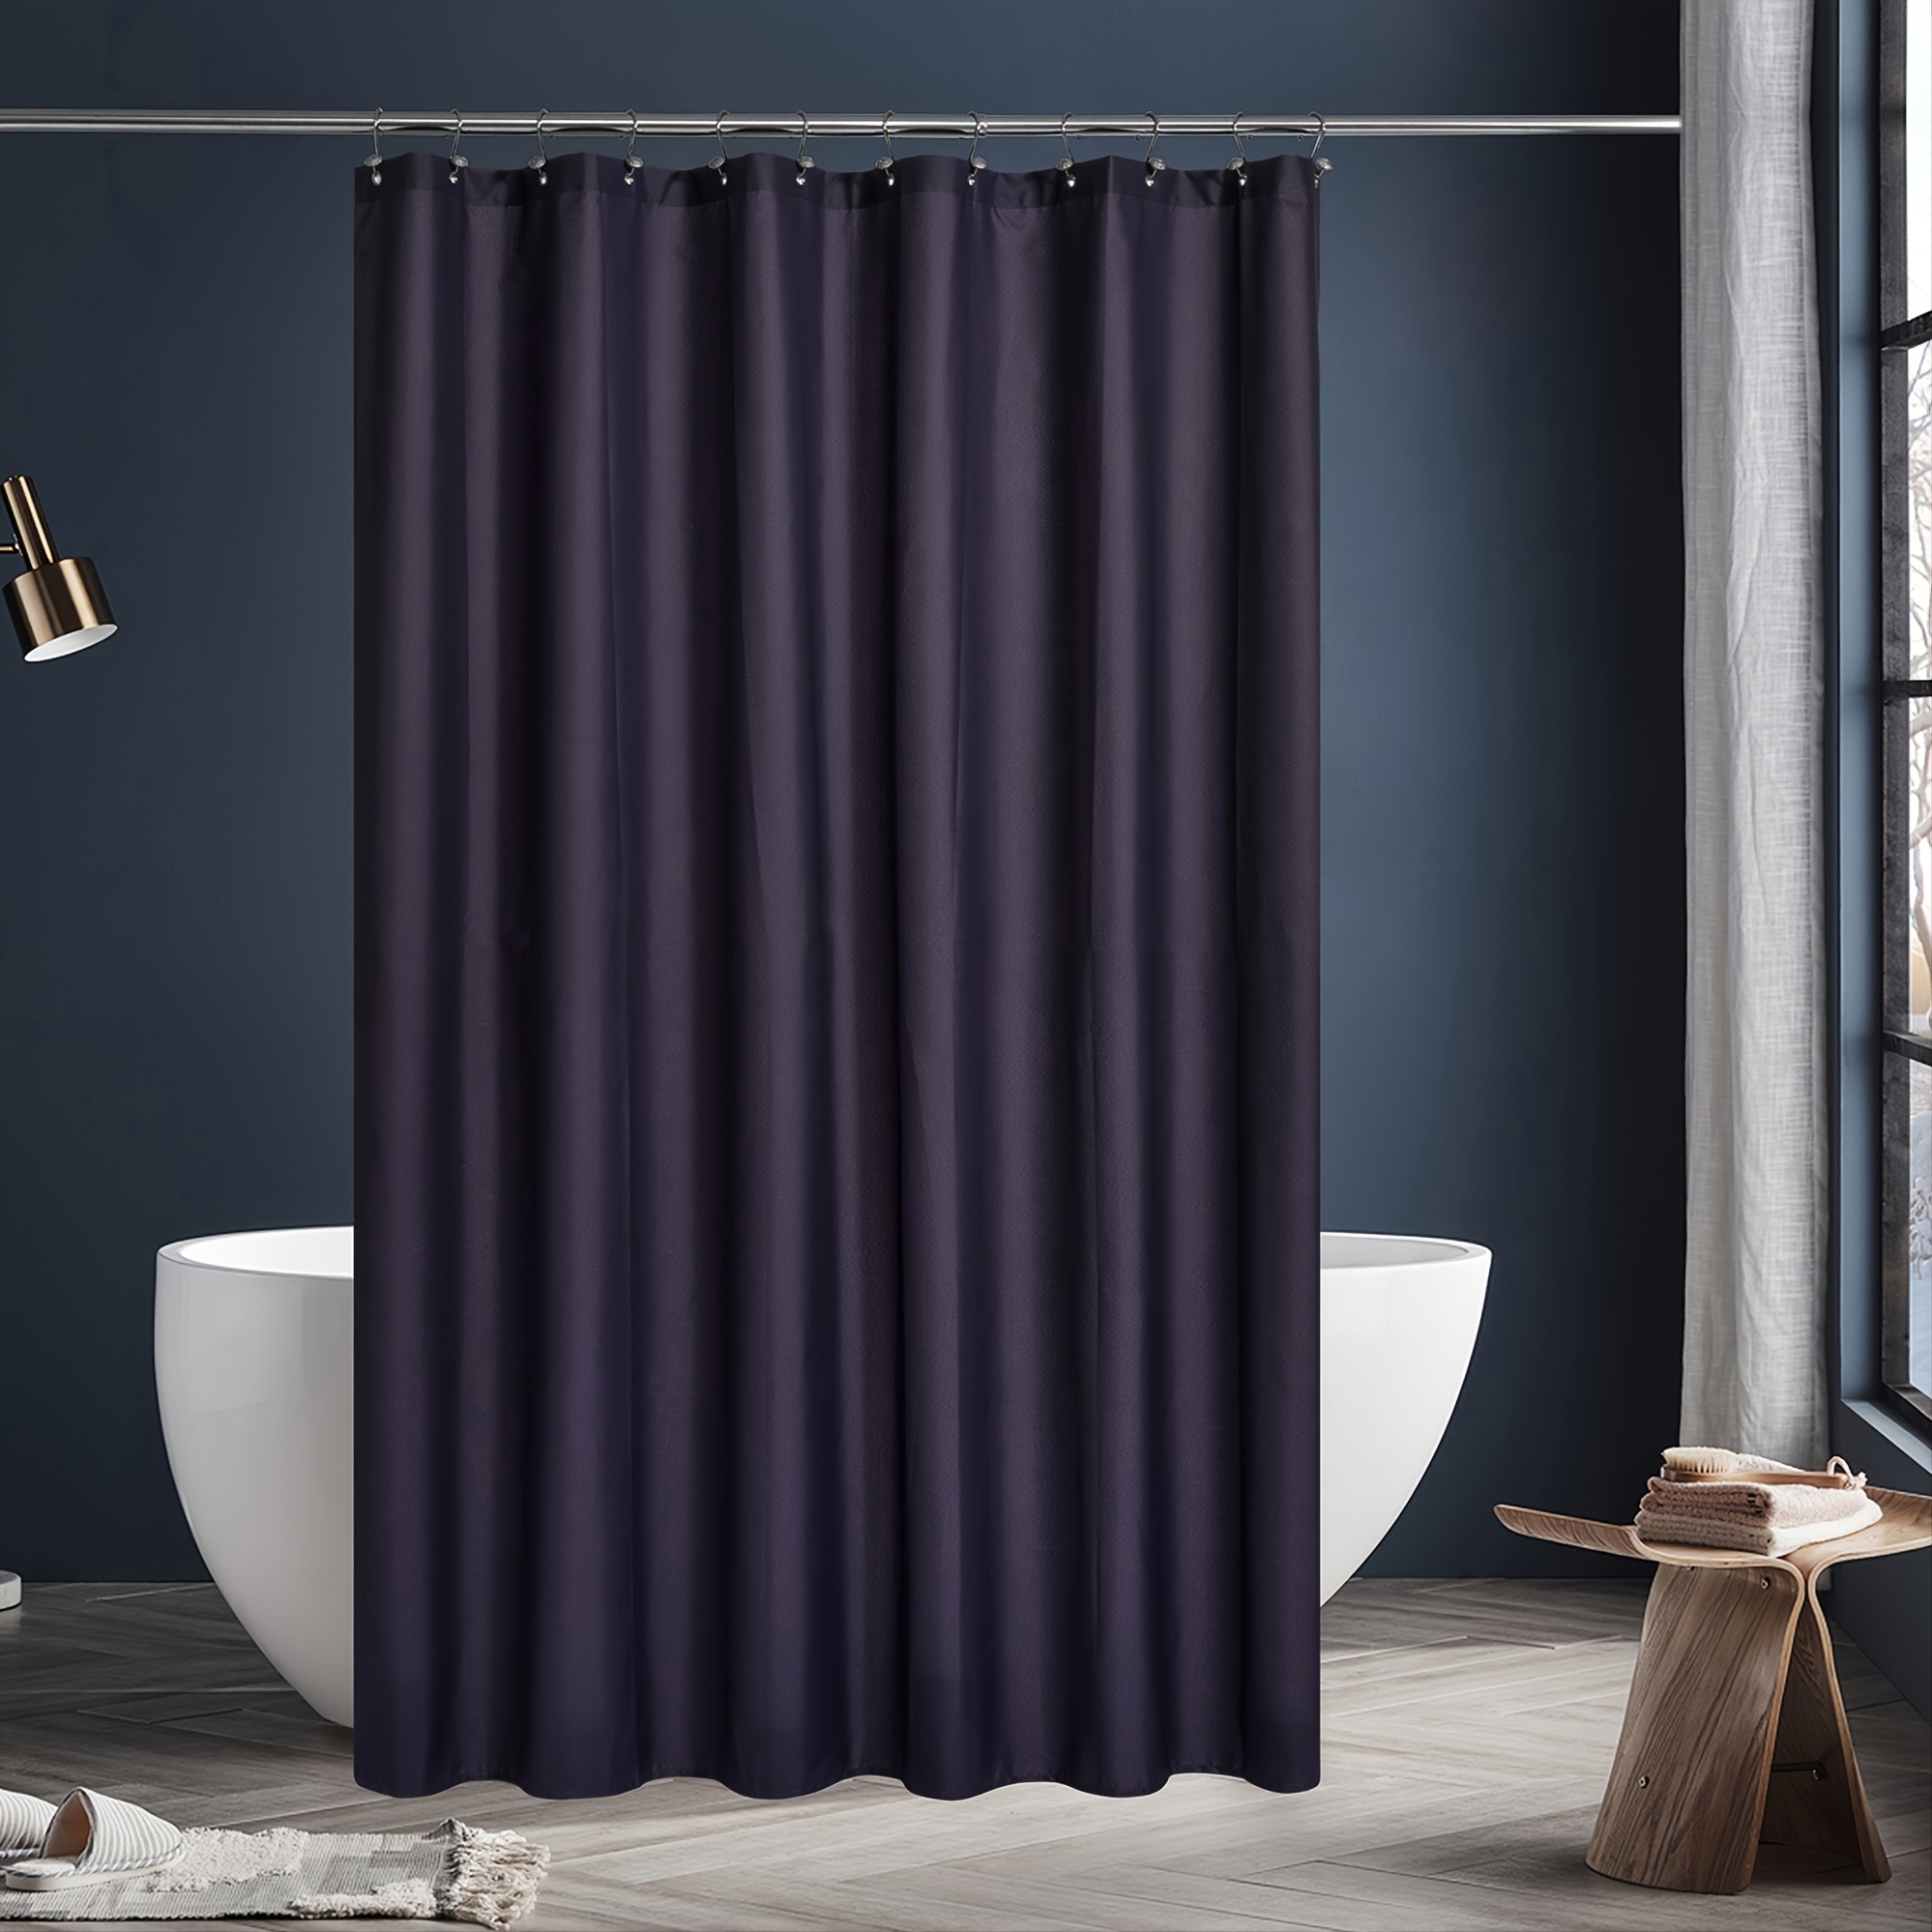 Cortina-De-Bano-De-Tela-72x72-Cortina-De-Ducha-Bath-Curtains-Shower-Curtains